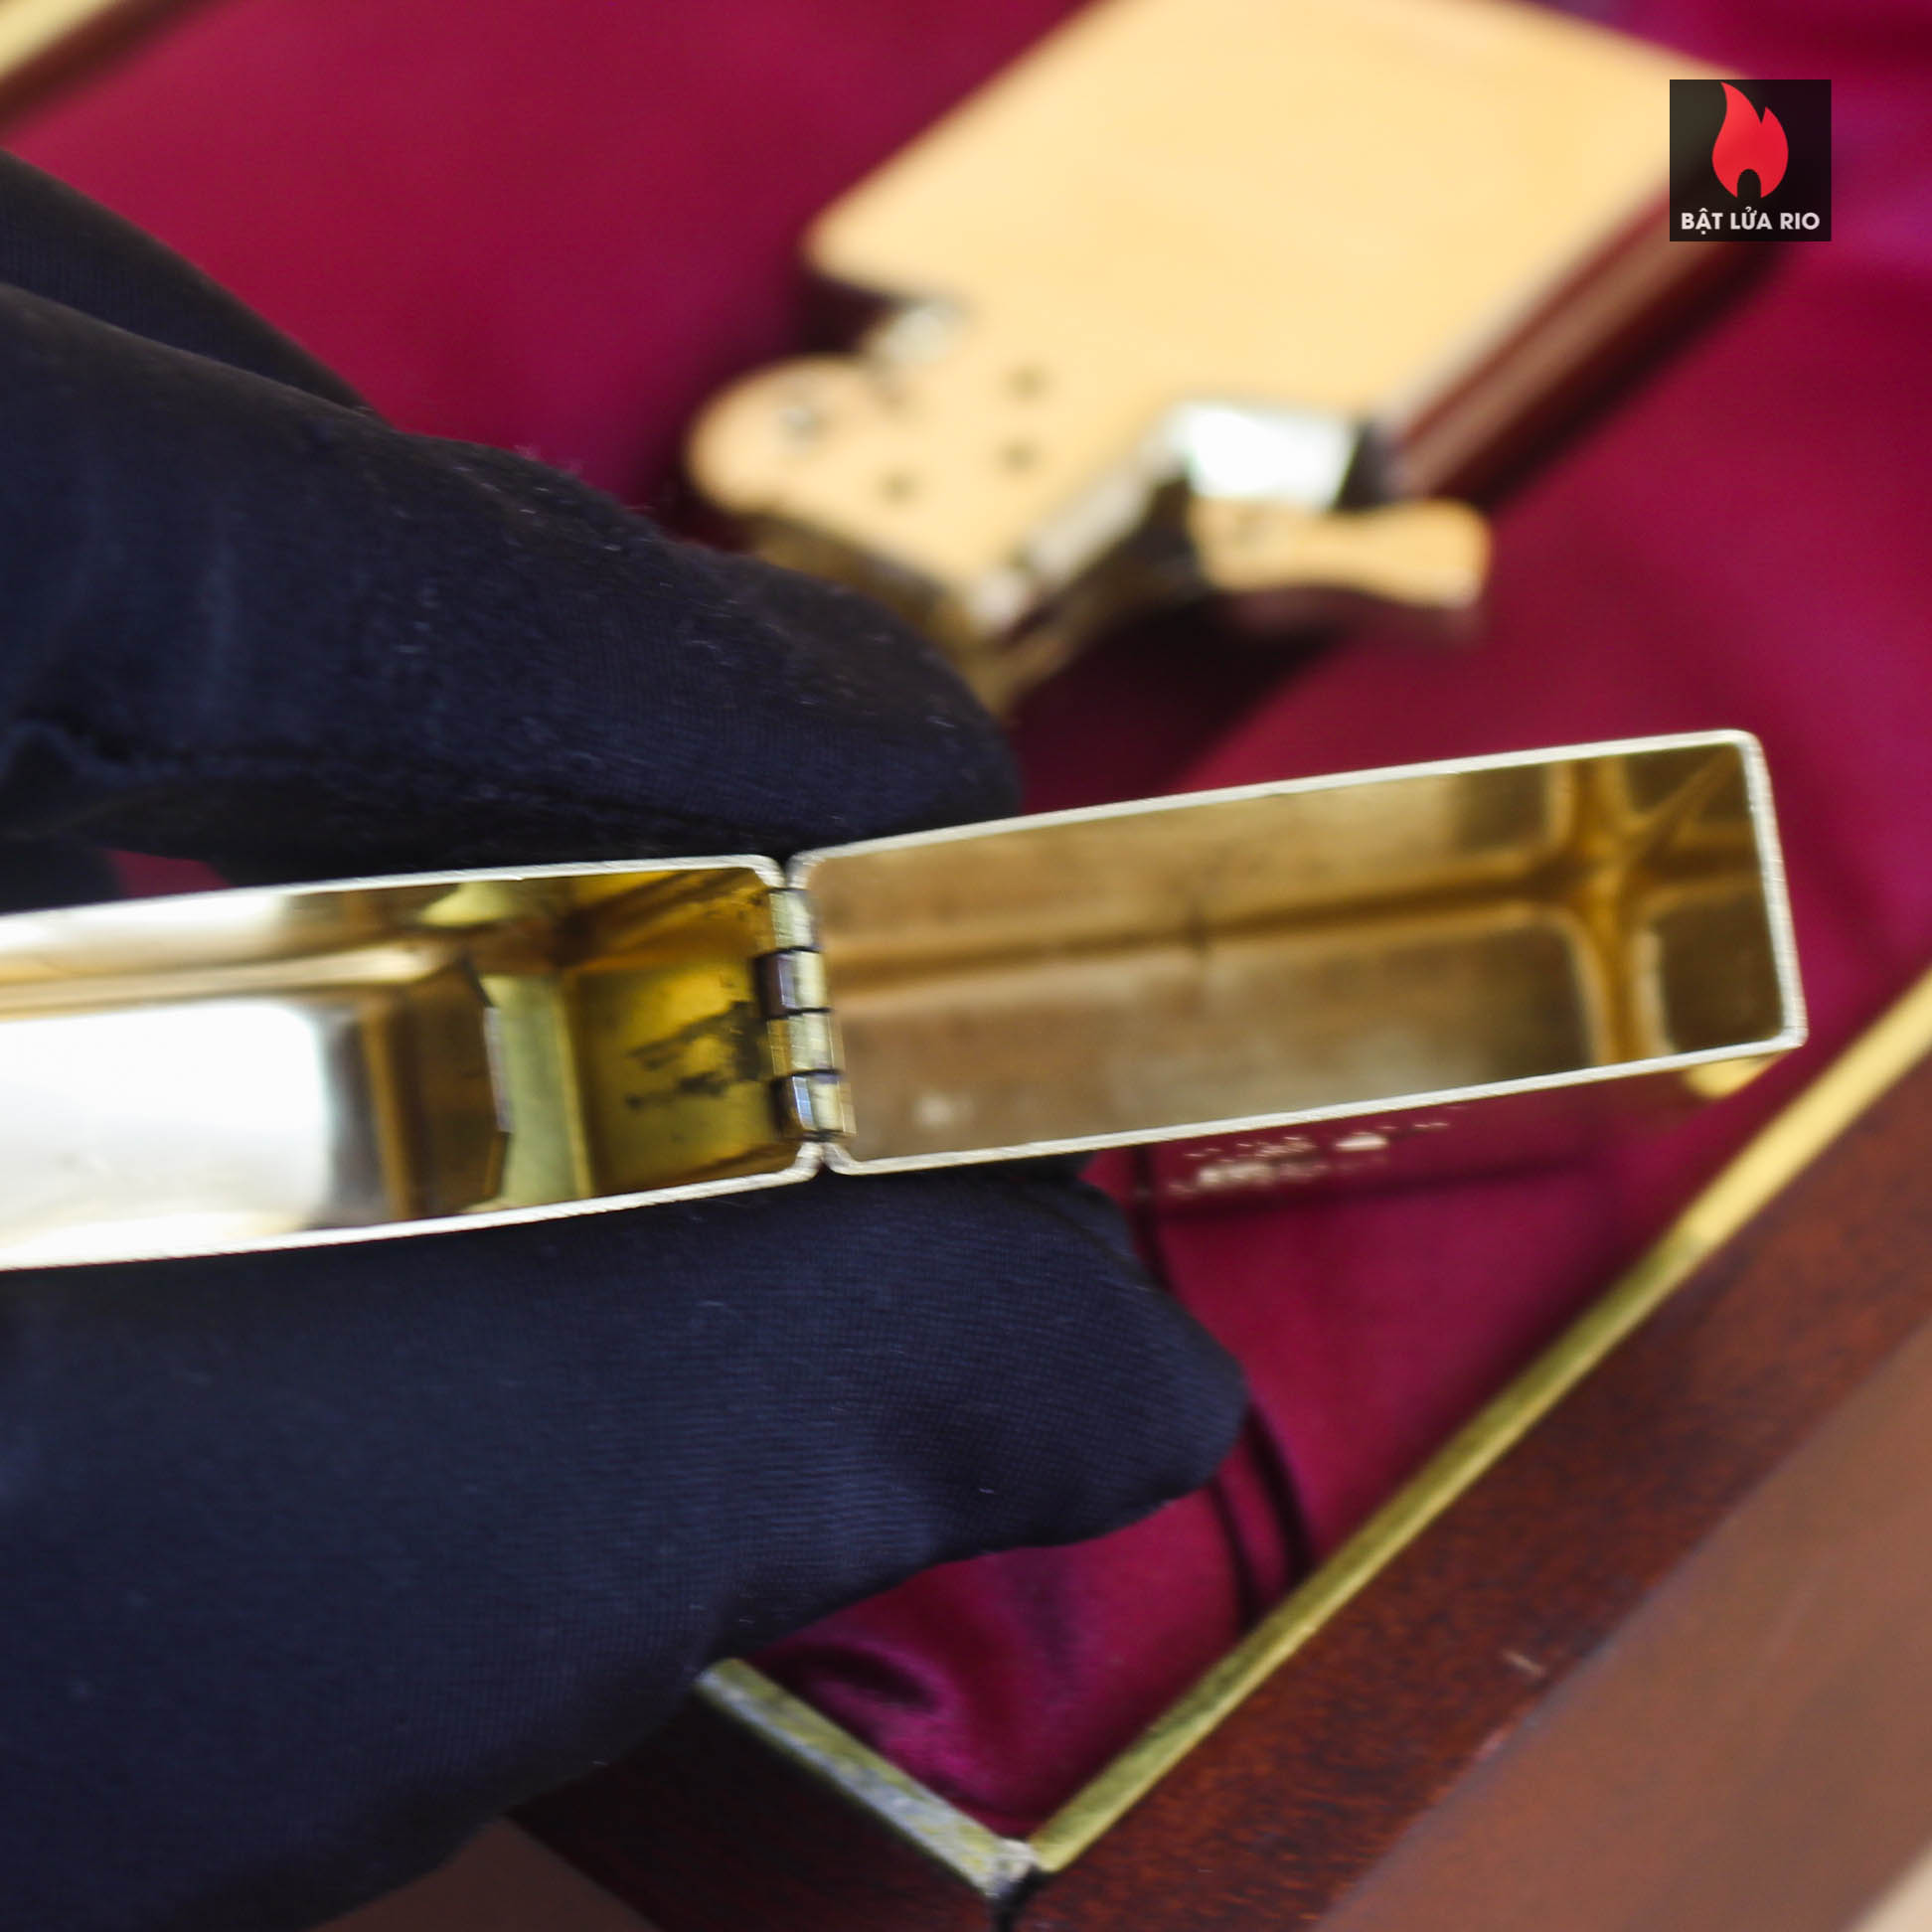 HIẾM - SIÊU PHẨM Zippo vàng nguyên khối Solid Gold 18K – Zippo Signet Lighter 18K Solid Gold - GGB 1941 - Giới hạn 300 chiếc trên toàn thế giới - Limited 24/300 23